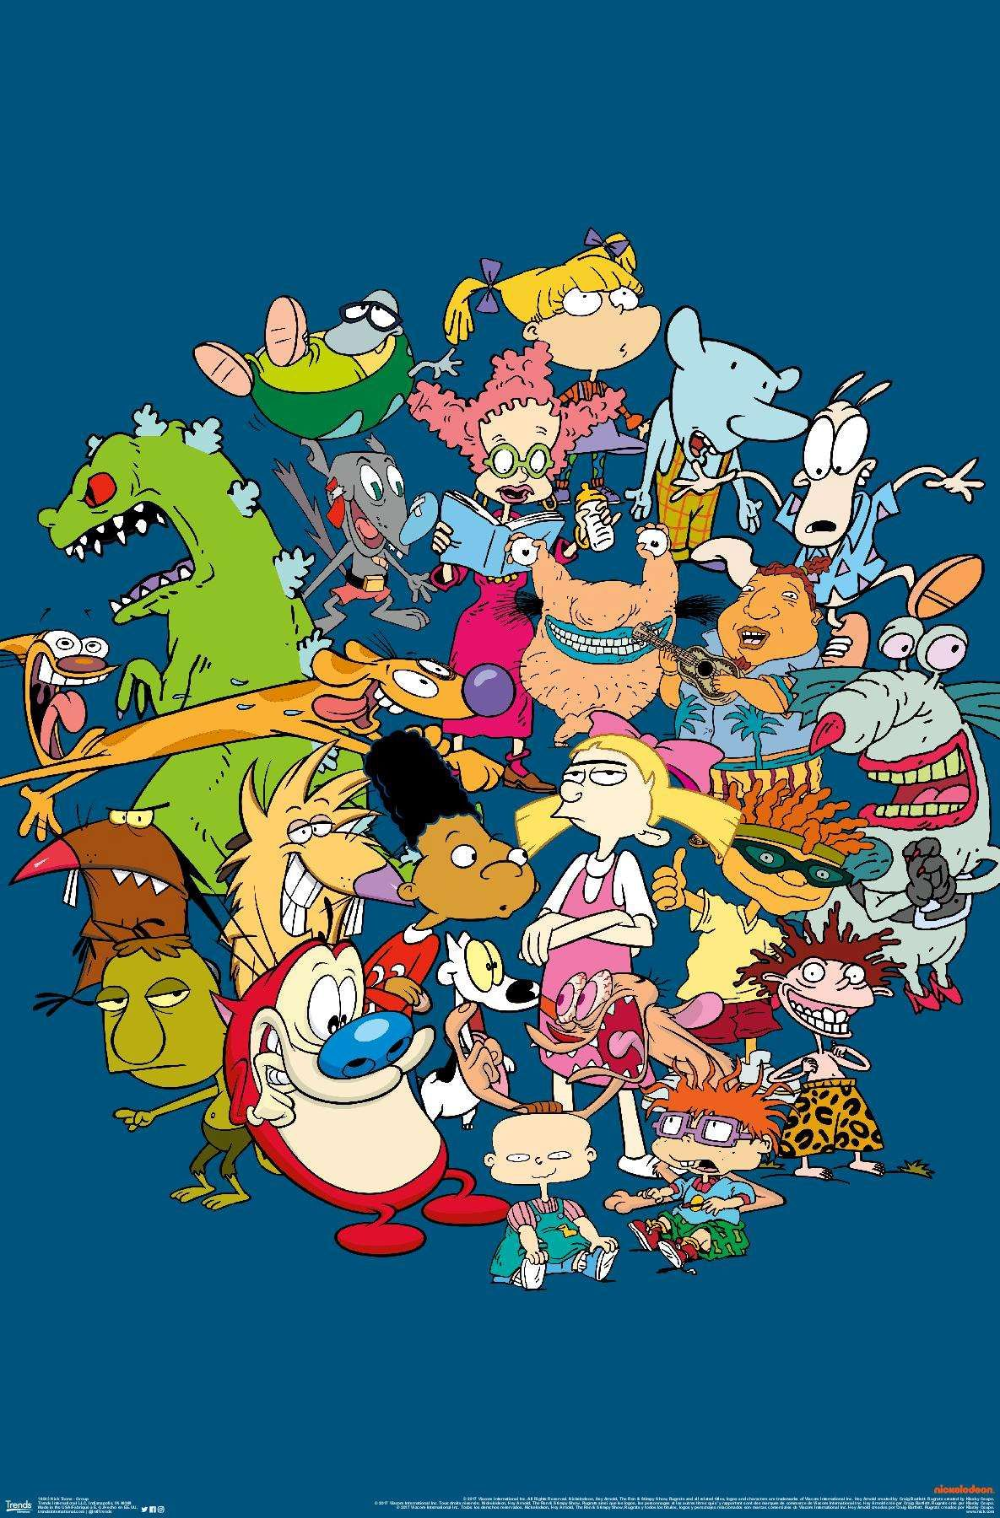 30+] Nickelodeon Characters Wallpapers - WallpaperSafari